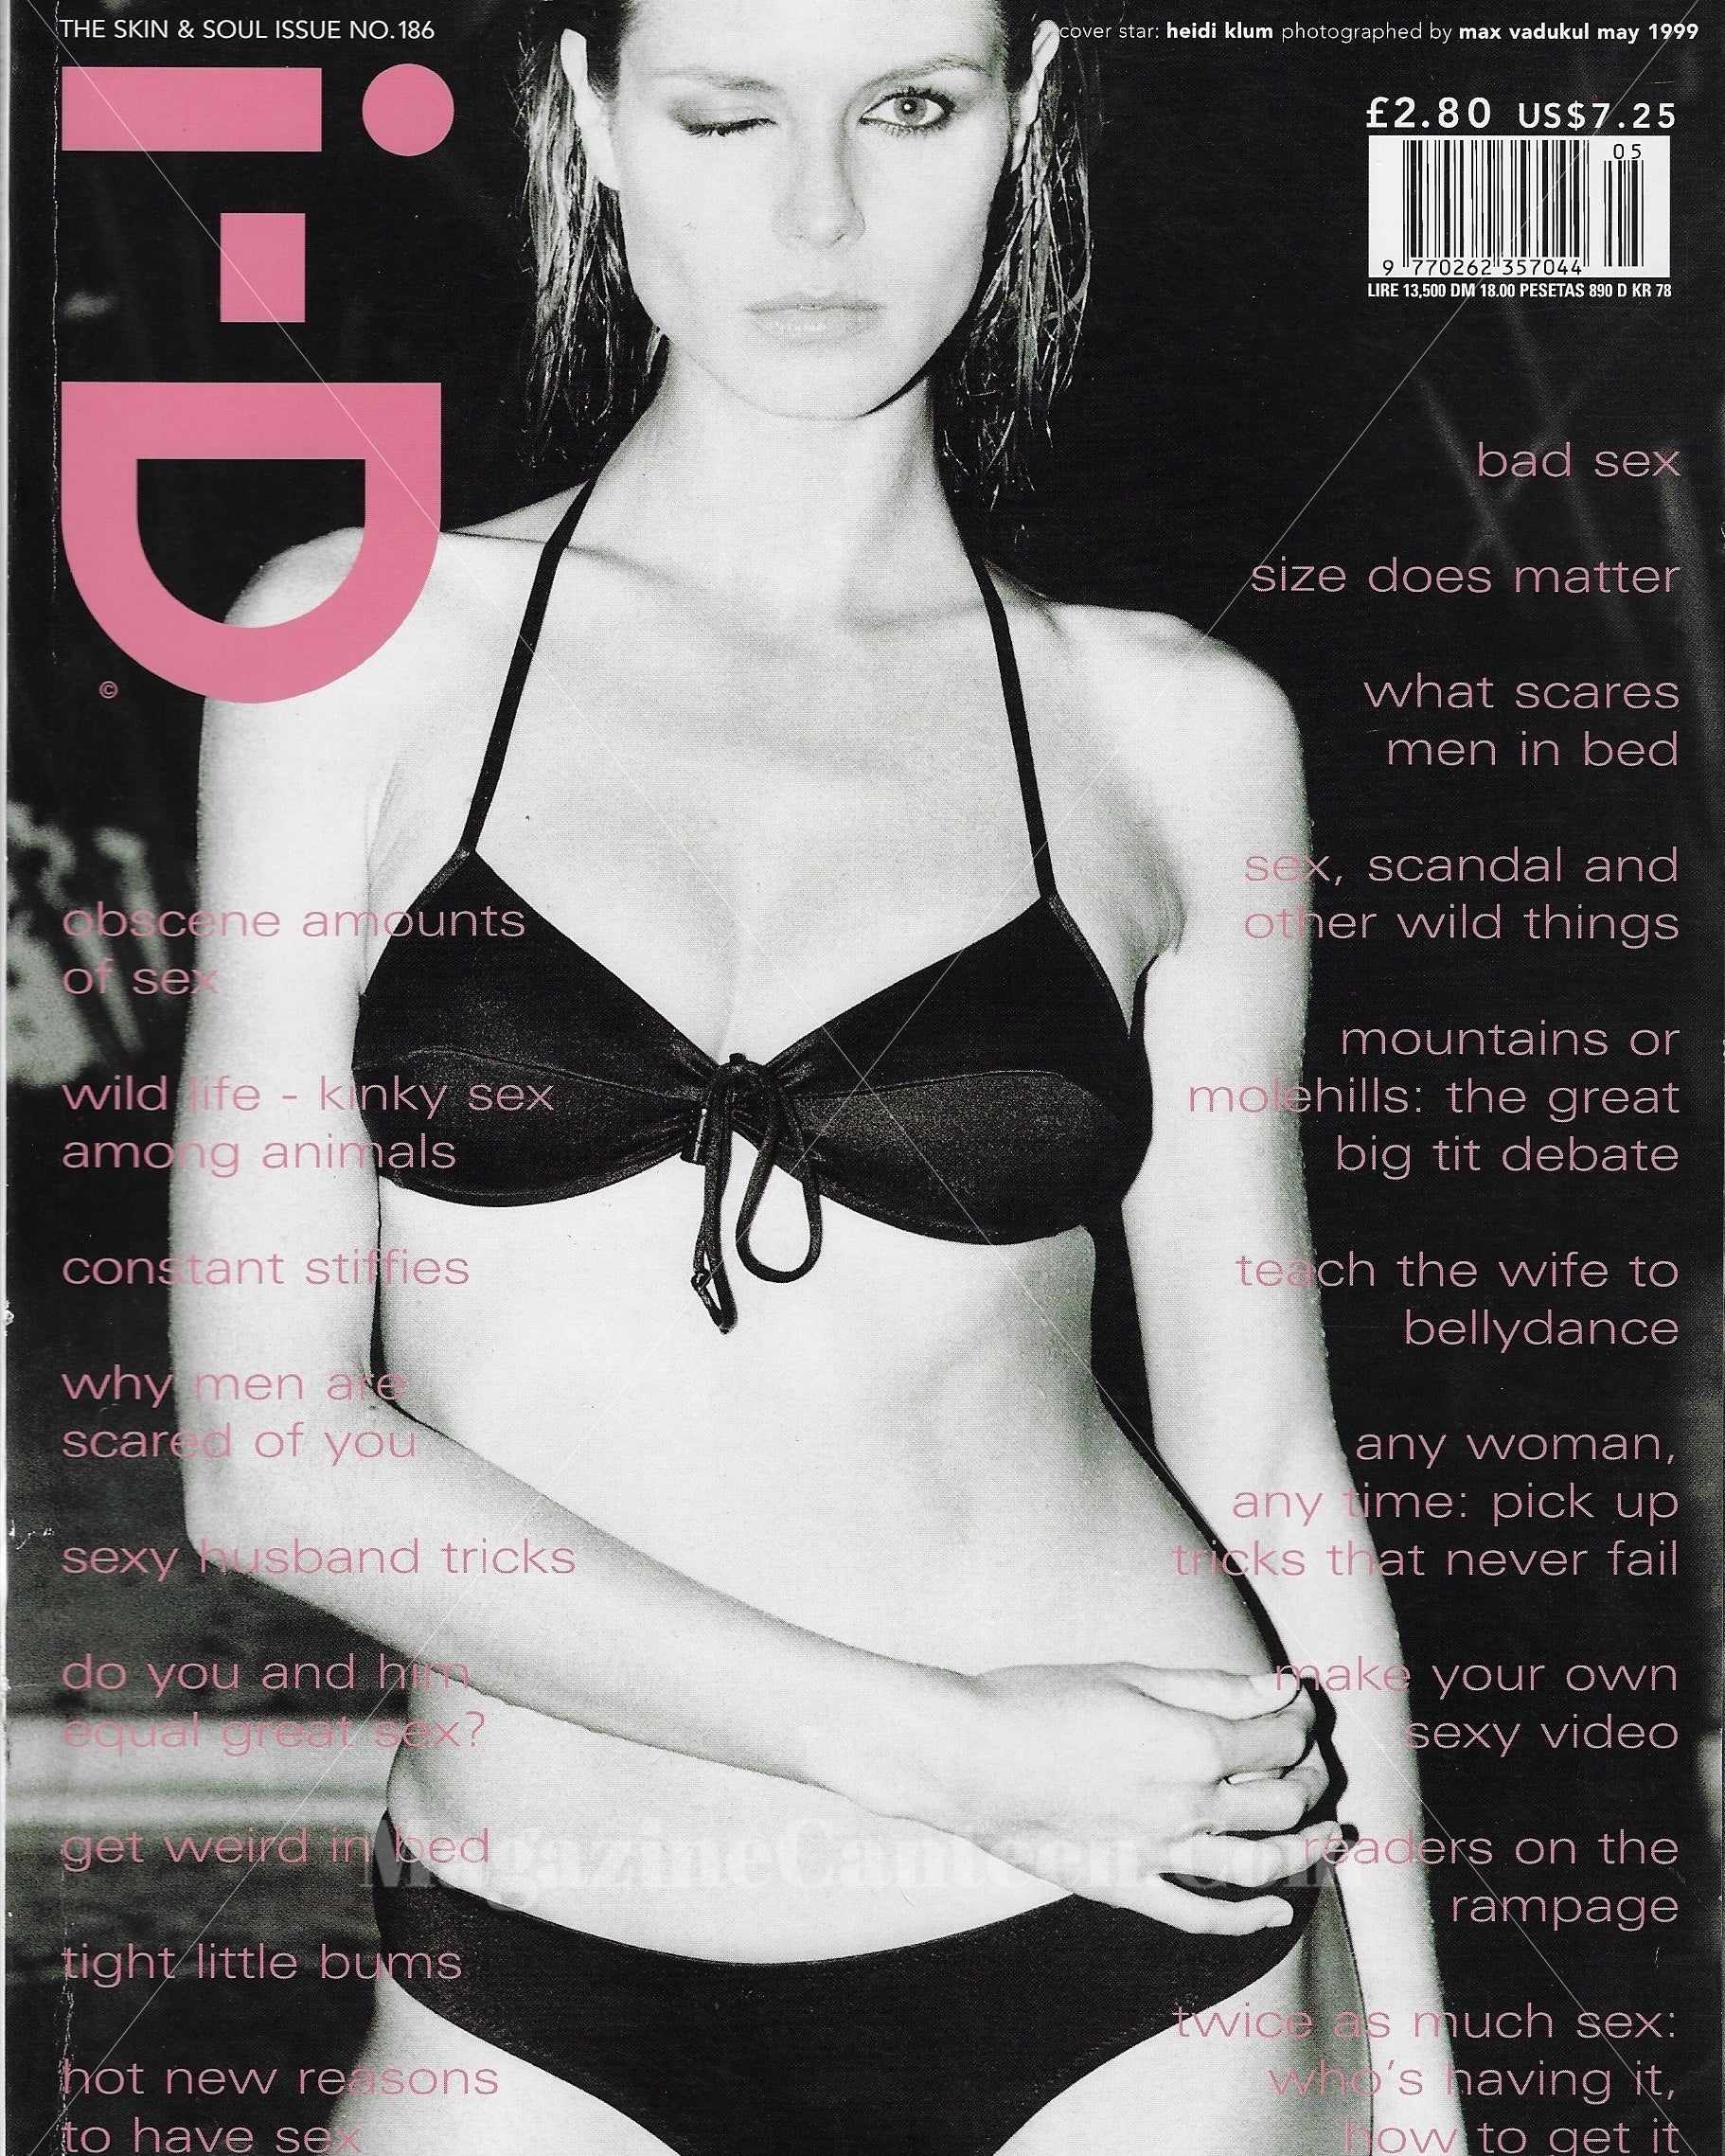 I-D Magazine 186 - Heidi Klum 1999